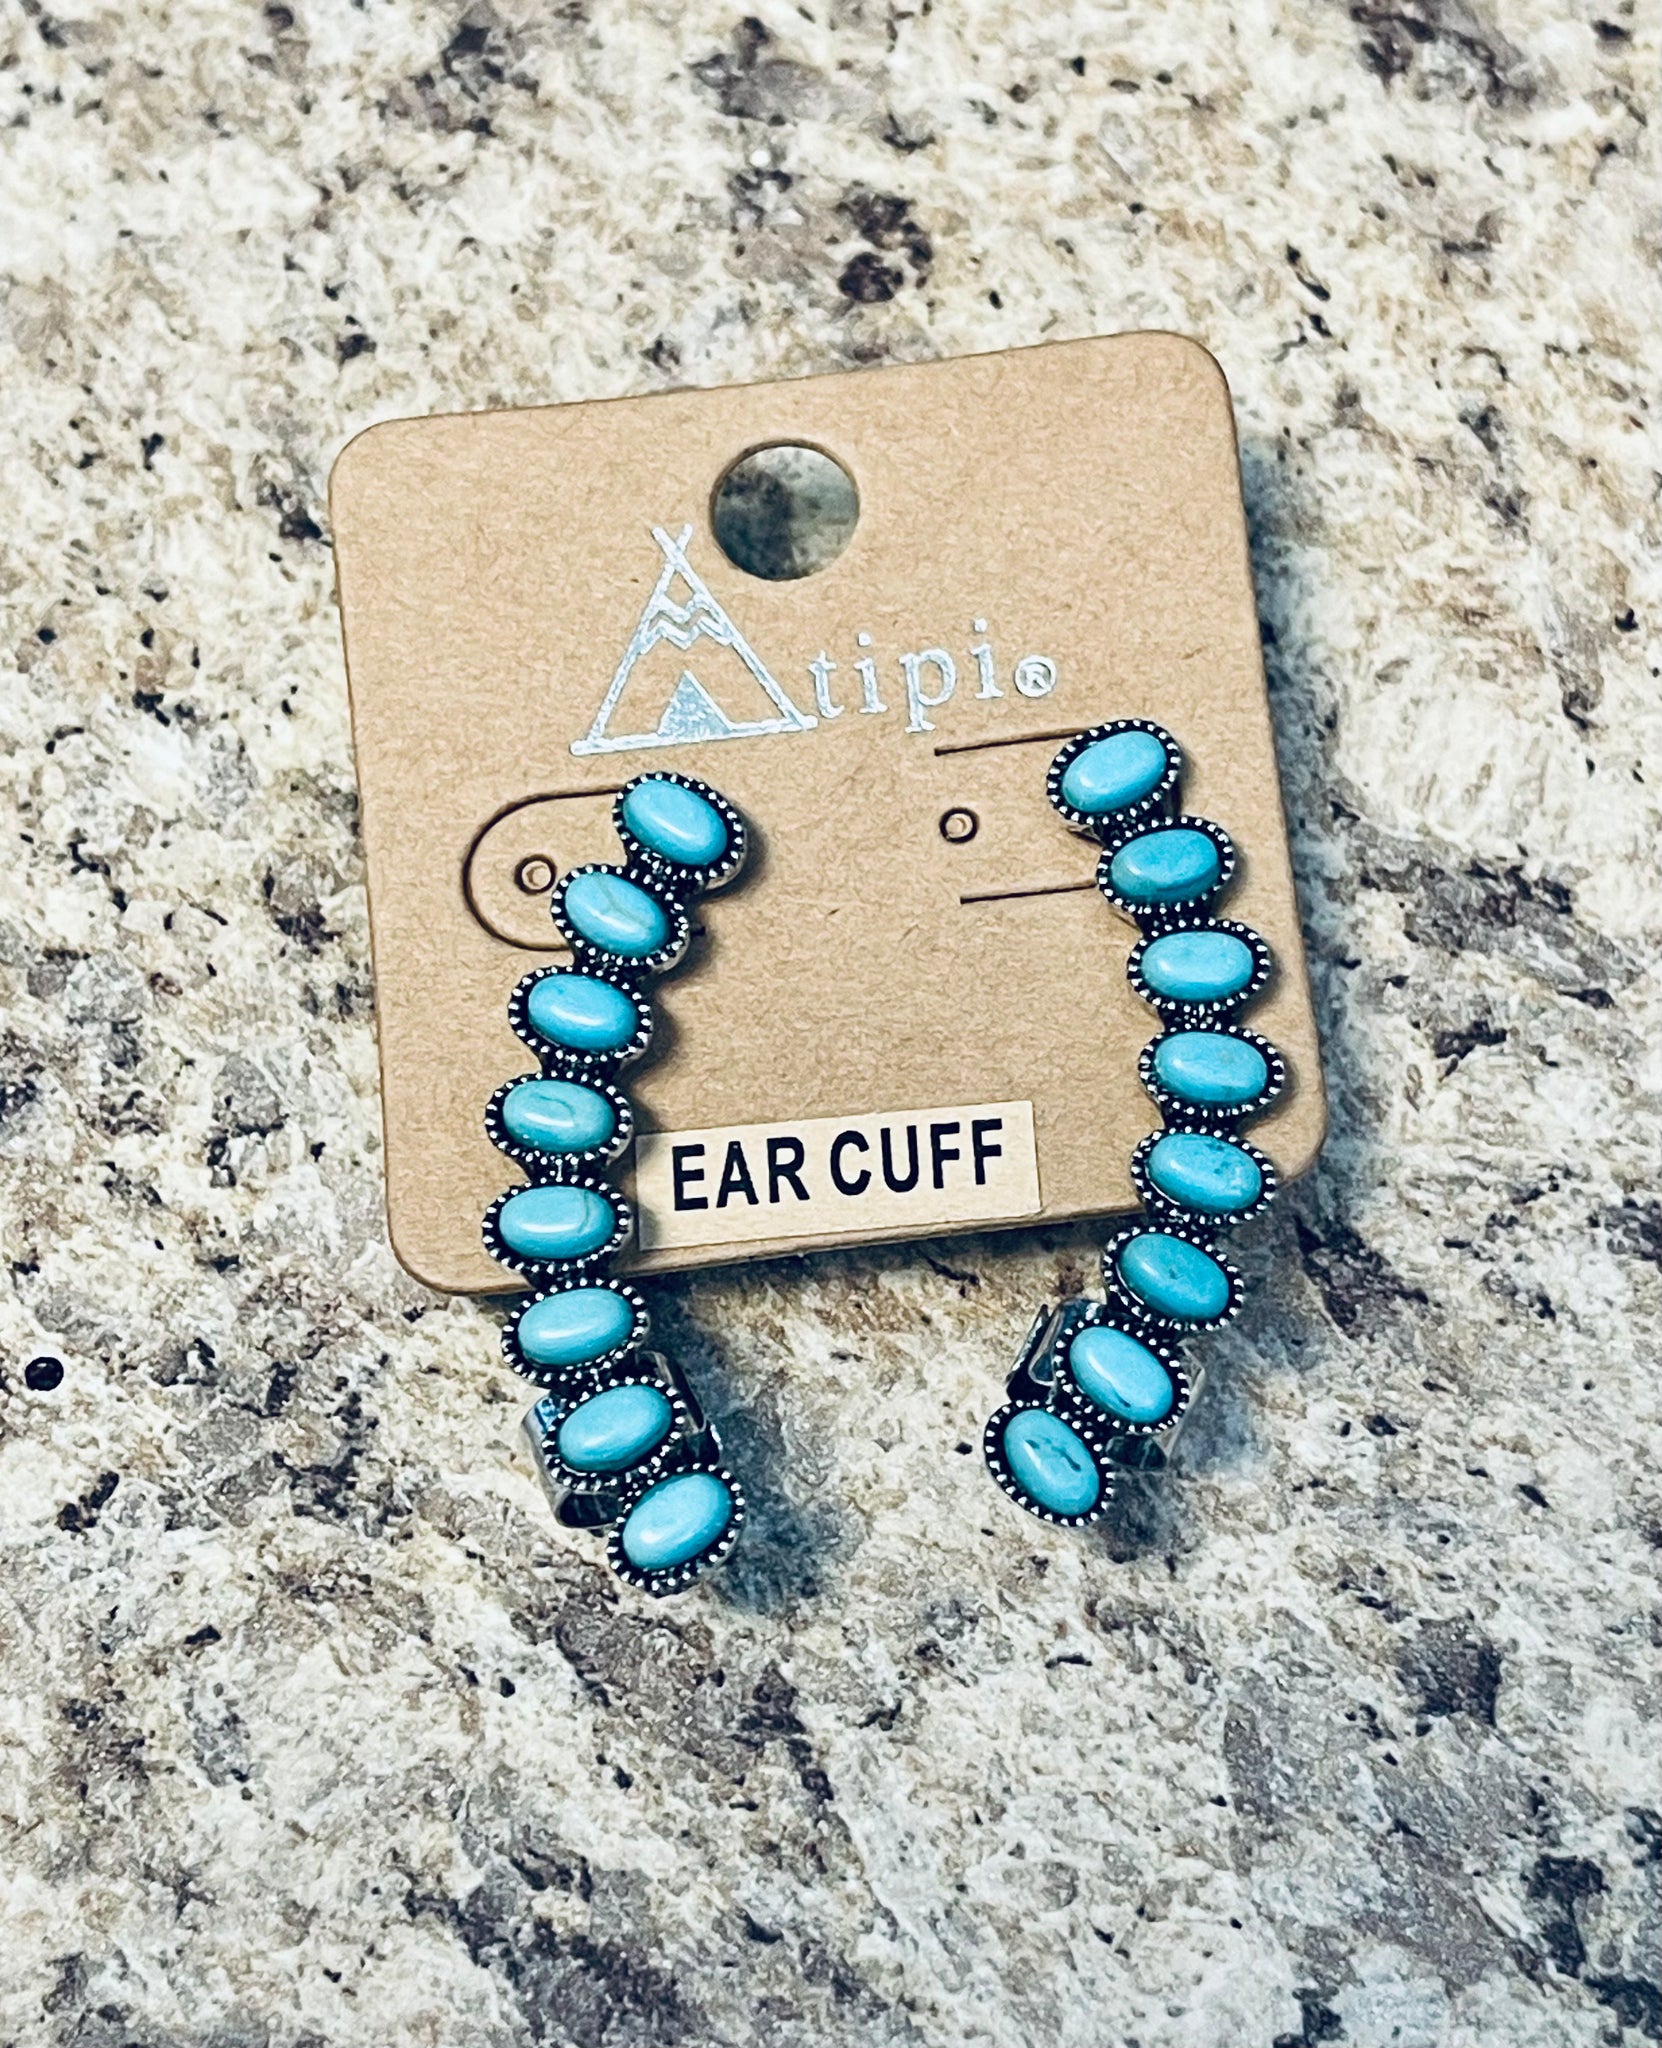 Turquoise stone ear cuff earrings